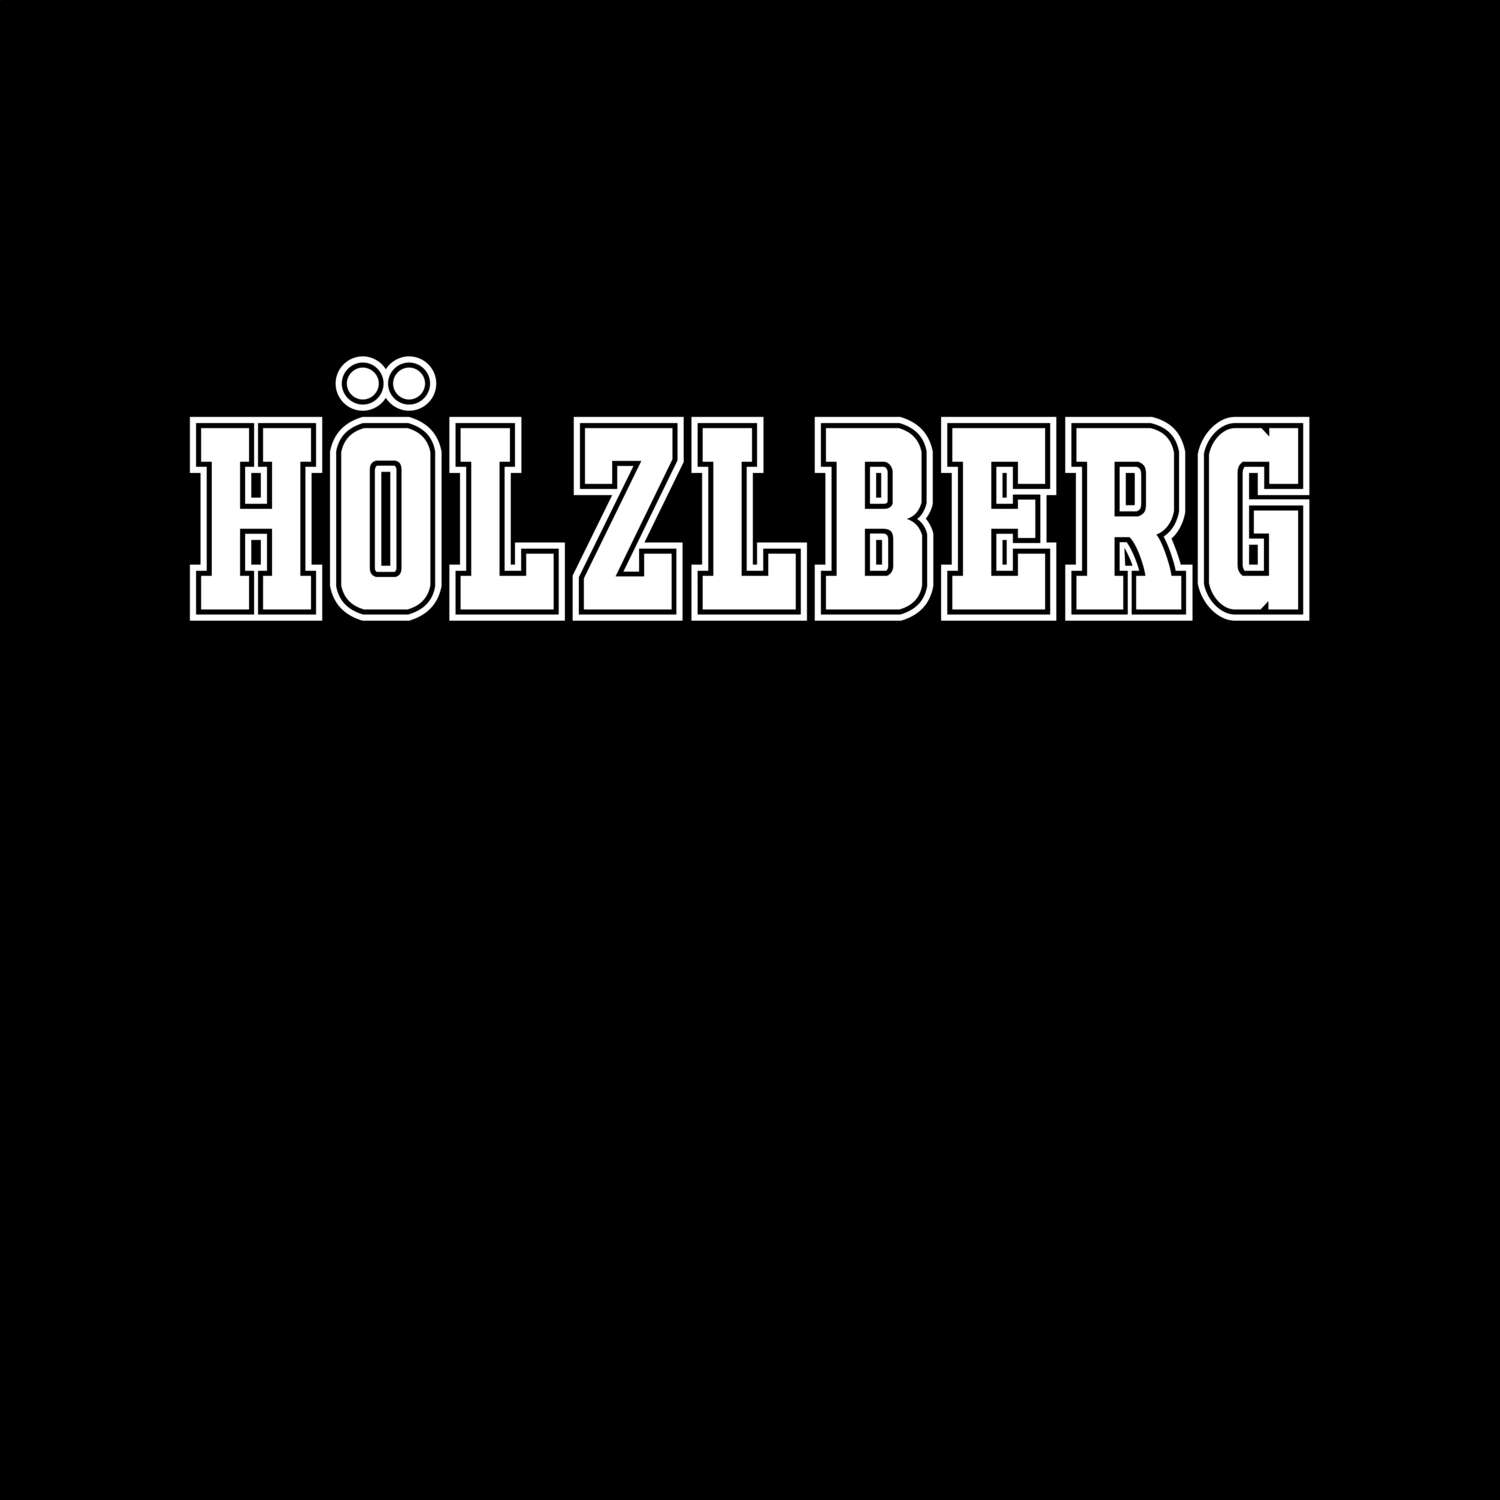 Hölzlberg T-Shirt »Classic«